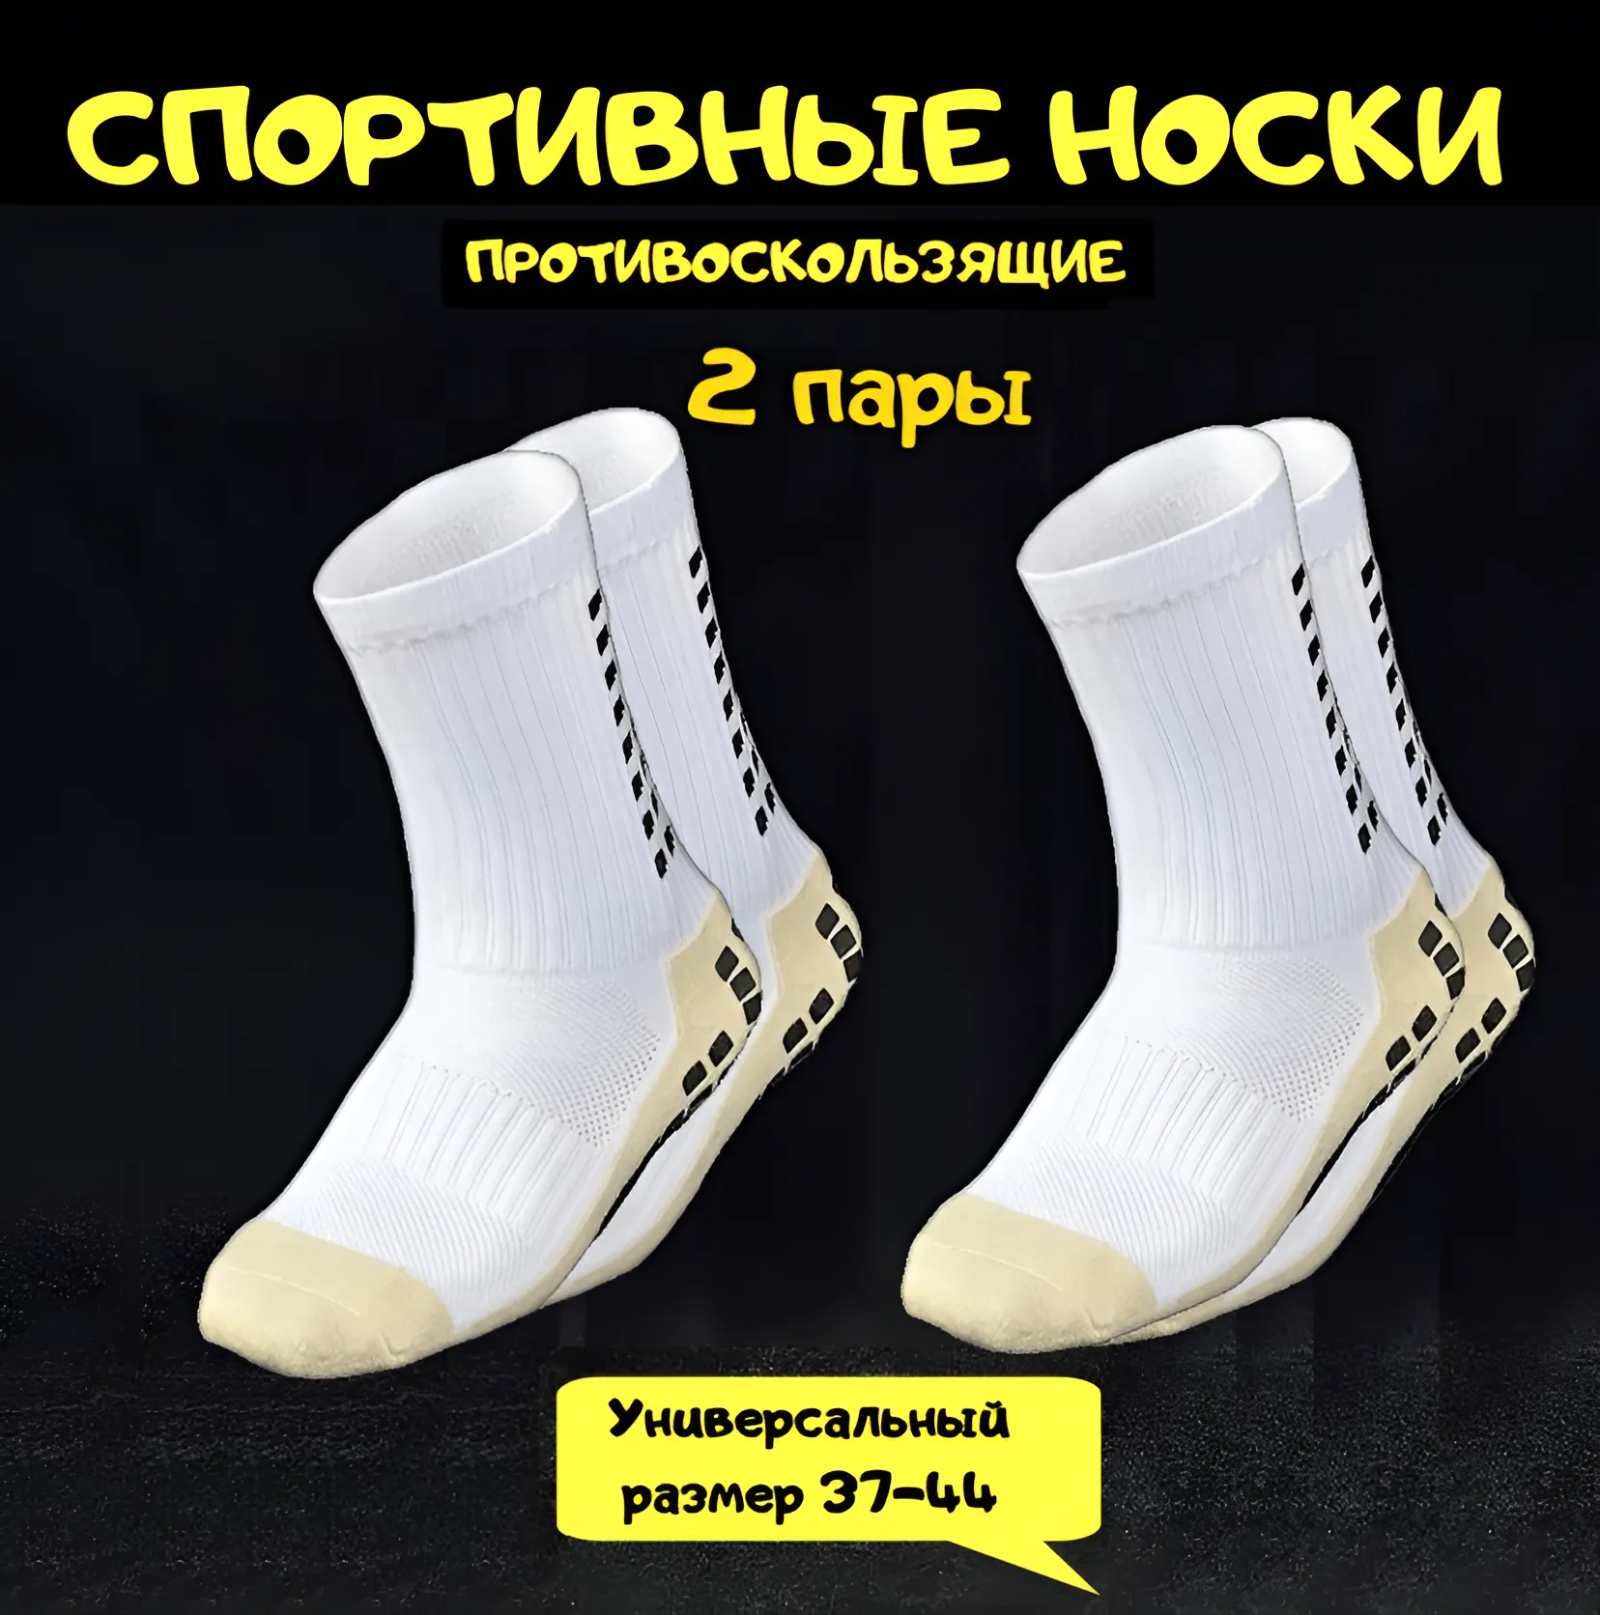 Носки  Противоскользящие спортивные носки для футбола и бега